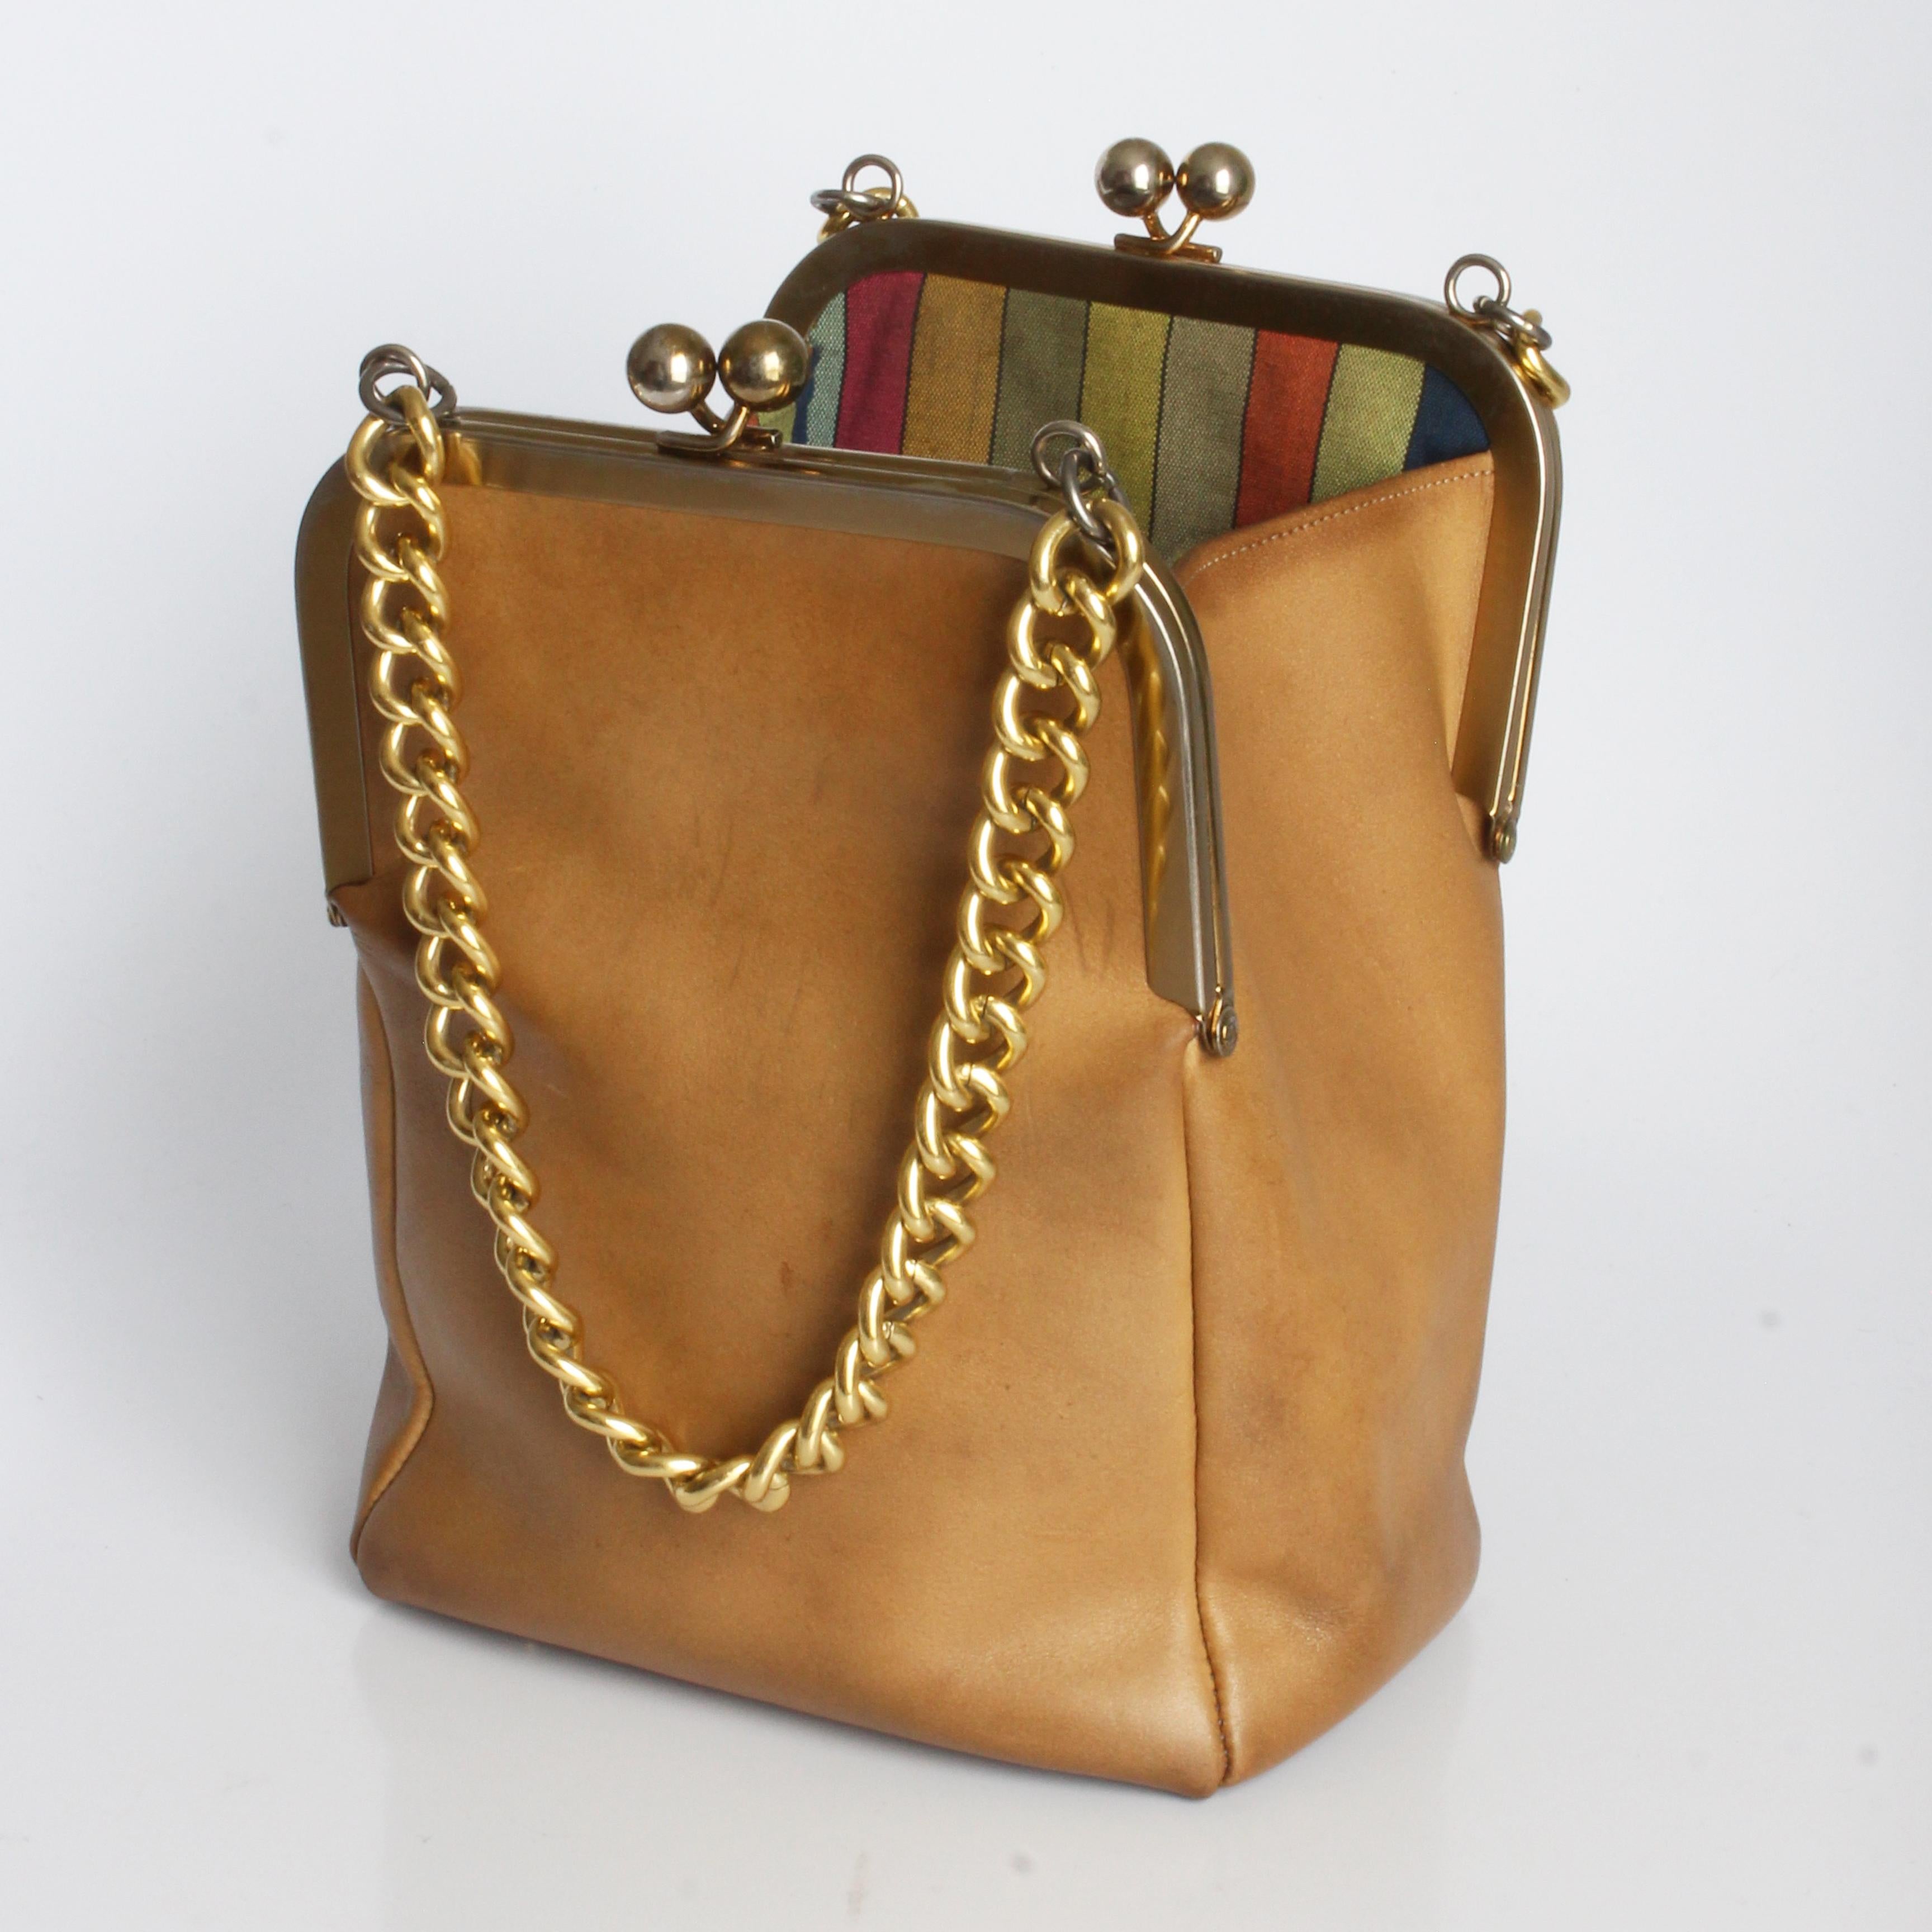 Authentische, gebrauchte, Vintage Bonnie Cashin for Coach 'Small Double Header' Tote Bag mit Kettenriemen, wahrscheinlich aus den späten 60er Jahren. Sie ist aus geschmeidigem, hellbraunem Leder gefertigt und verfügt über doppelte Kiss-Lock-Taschen